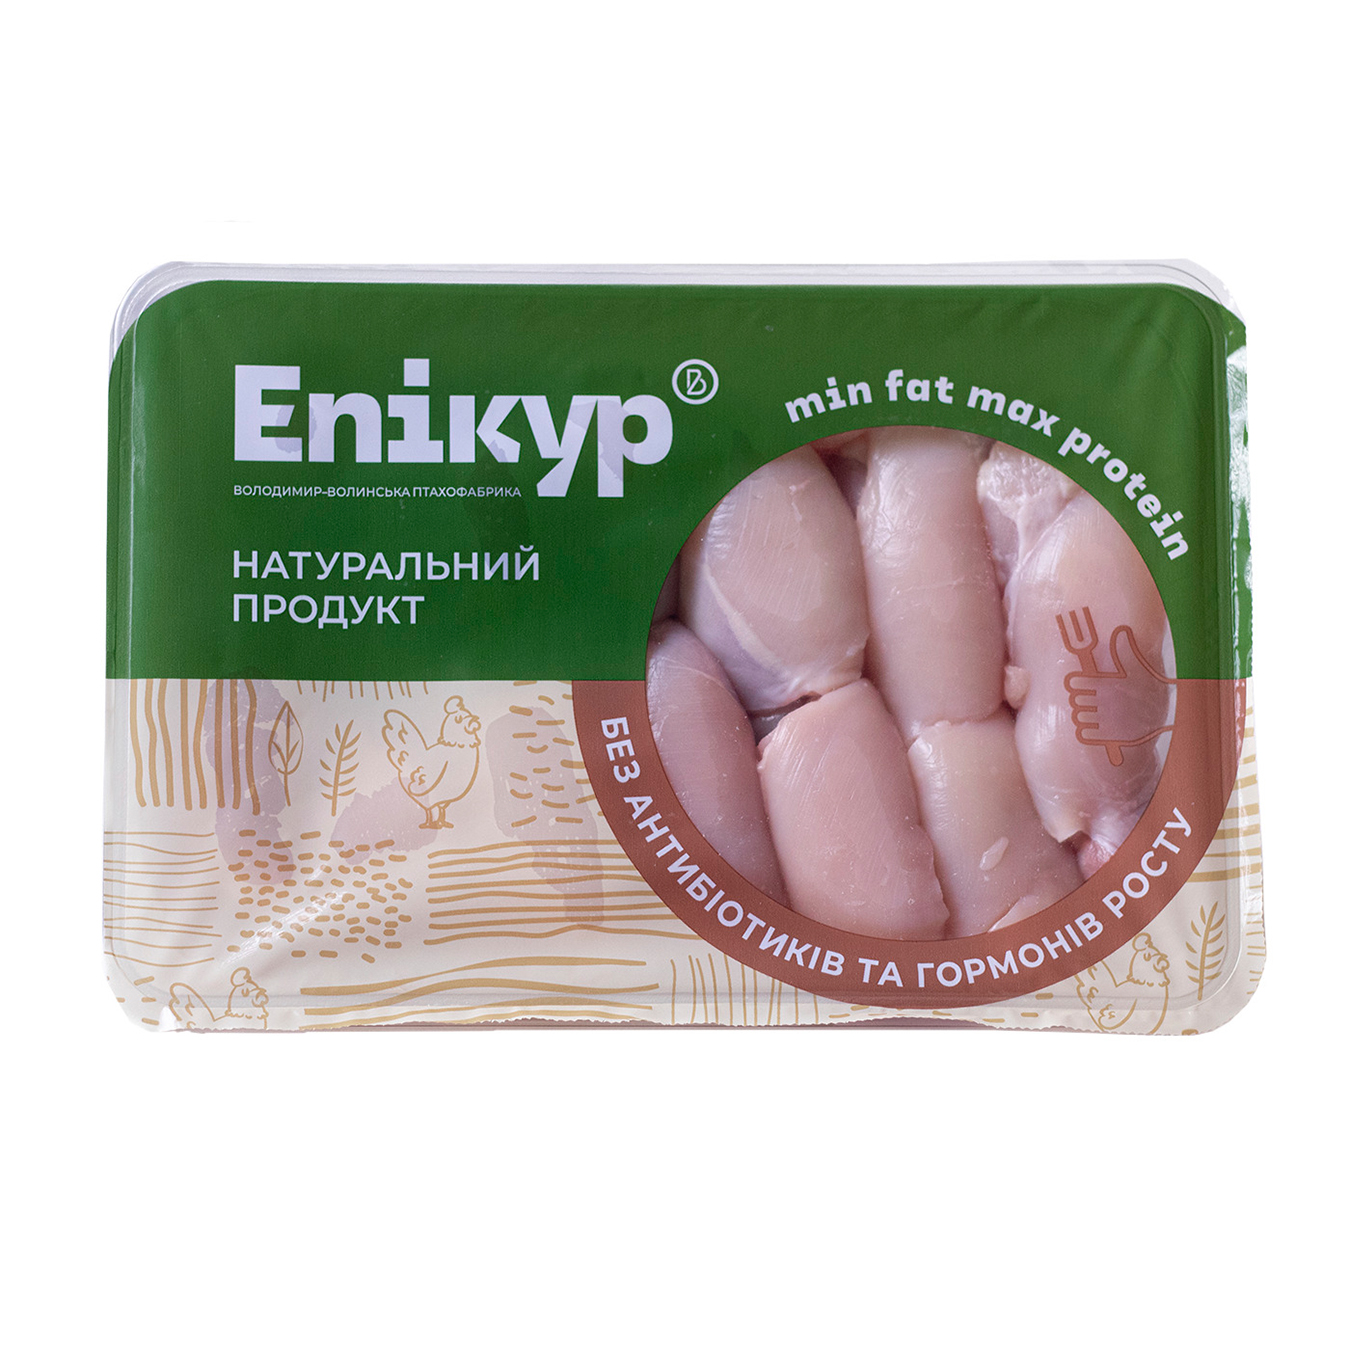 Филе бедра Эпикур цыплят-бройлеров охлажденное 550-700 грамм в упаковке